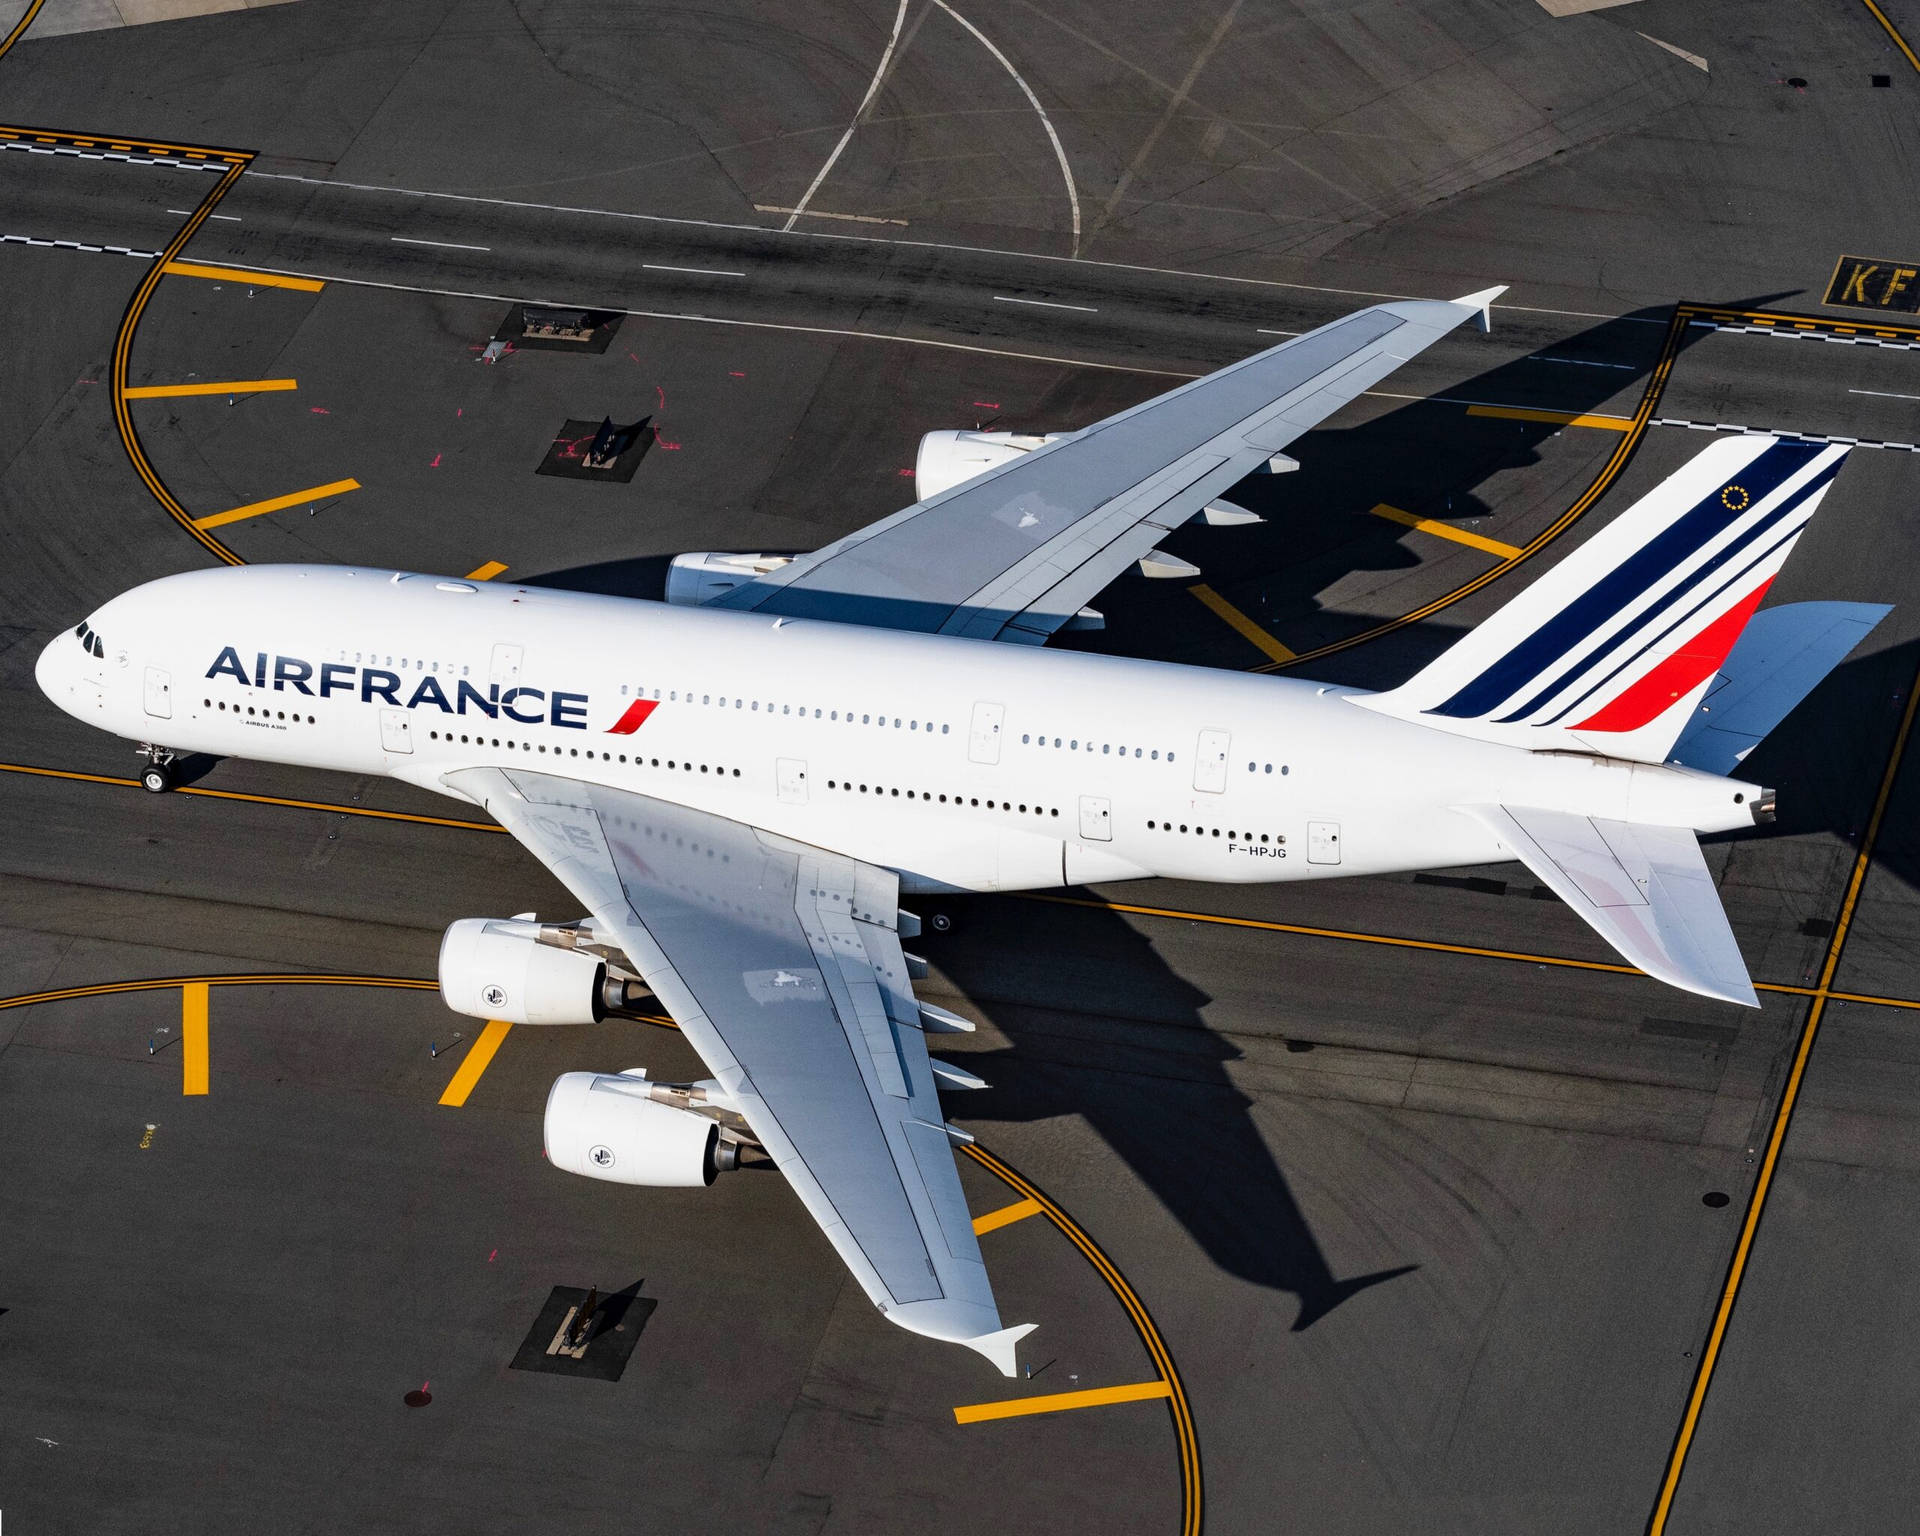 Air France 2560 X 2048 Wallpaper